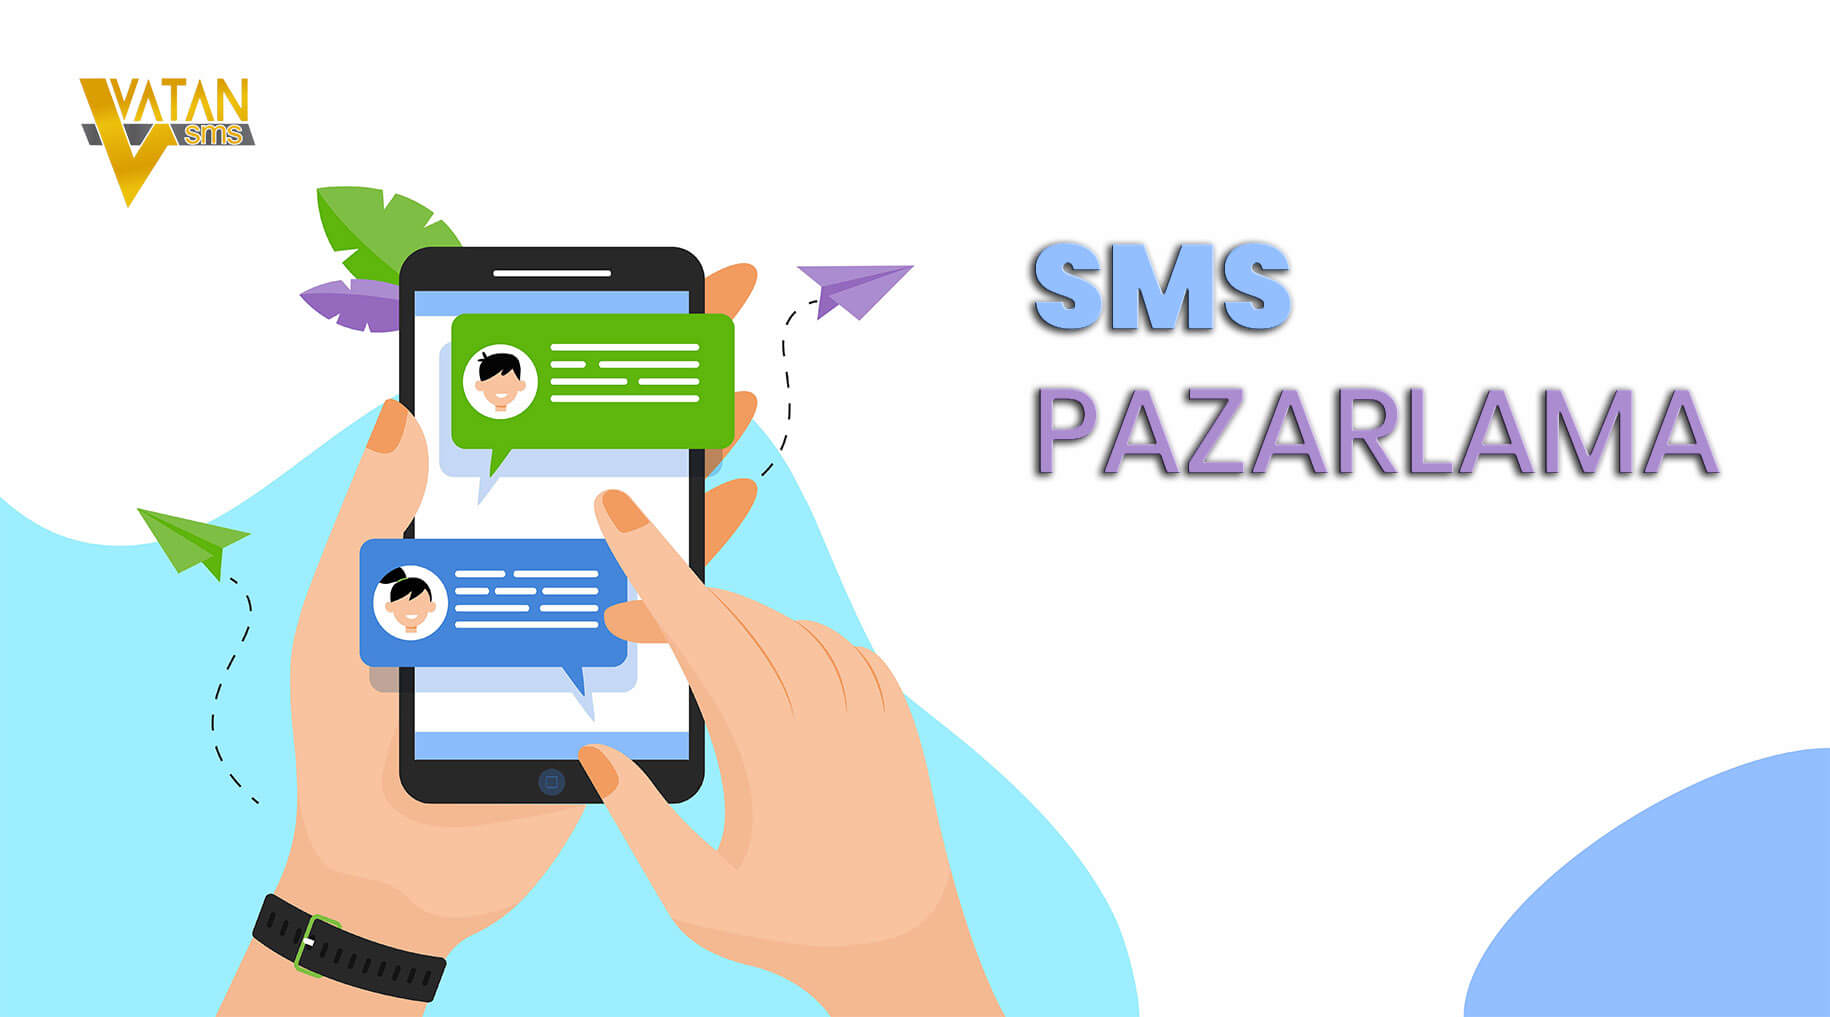 SMS Pazarlama width=